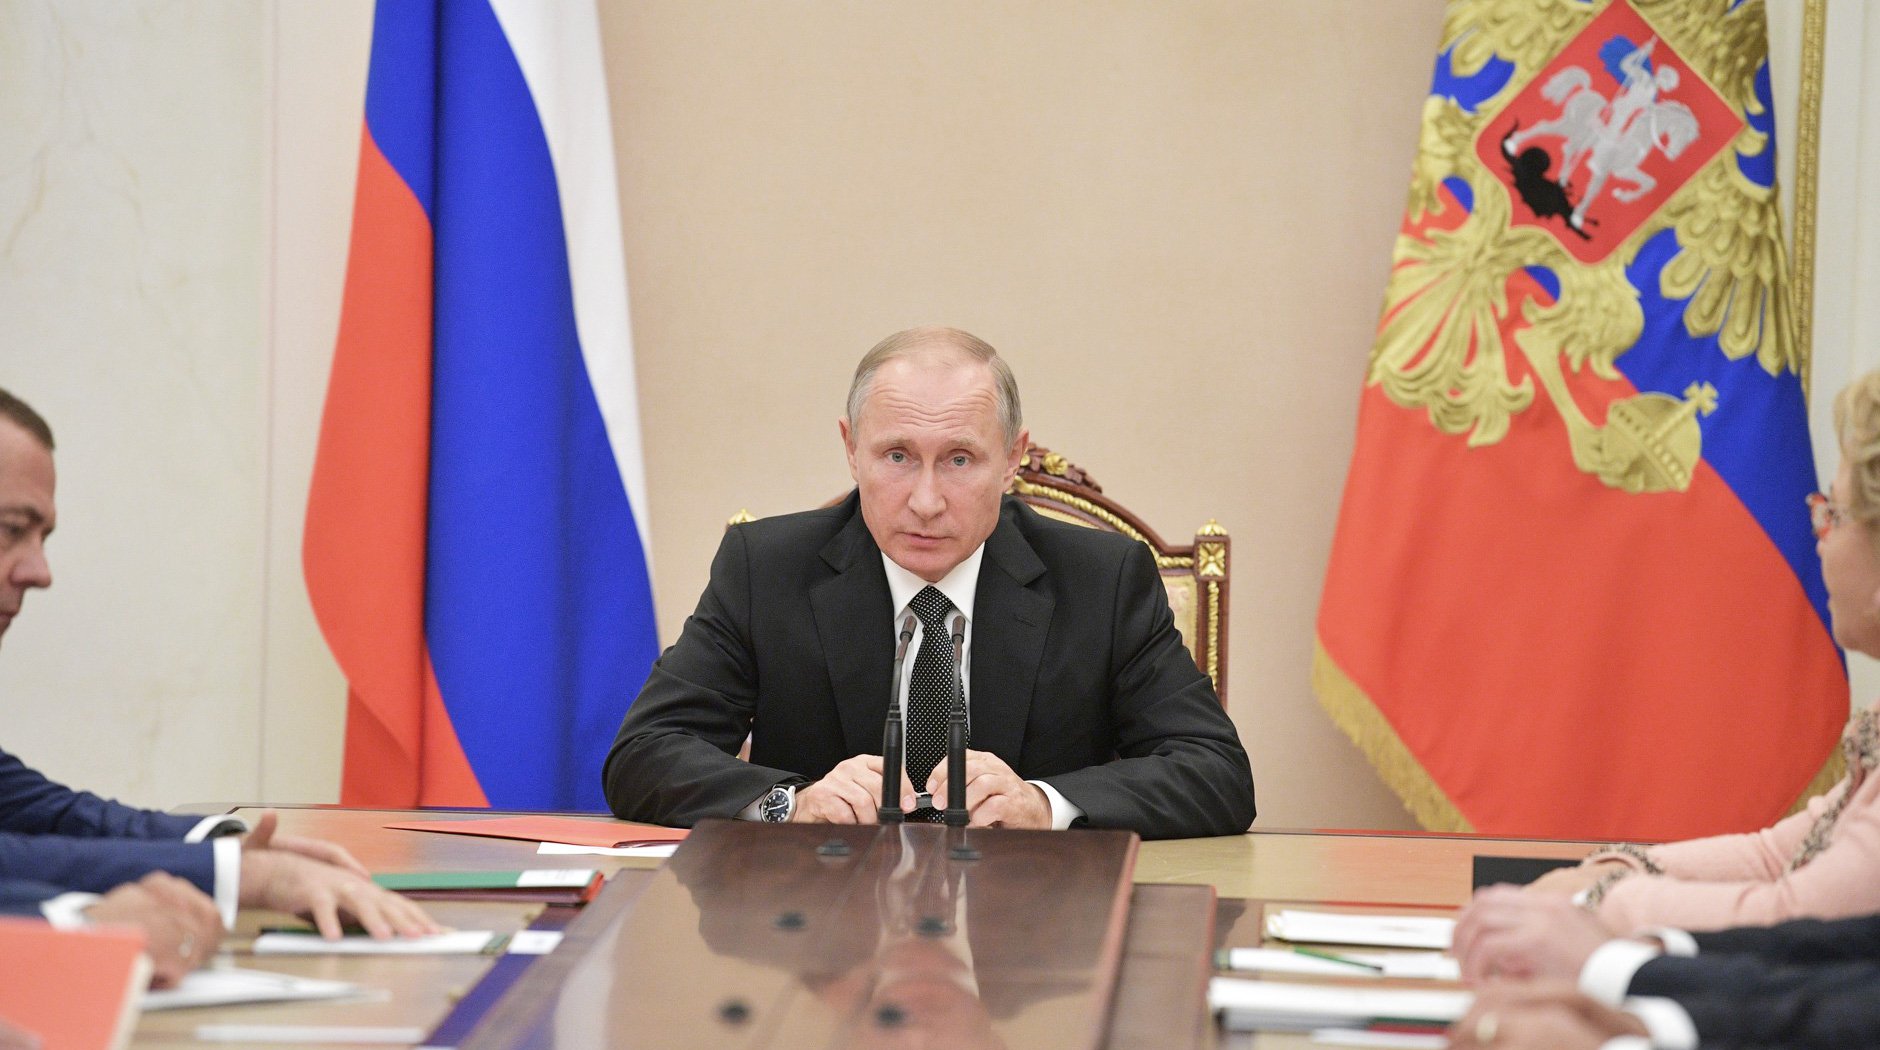 Фото: © GLOBAL LOOK press/Kremlin Pool